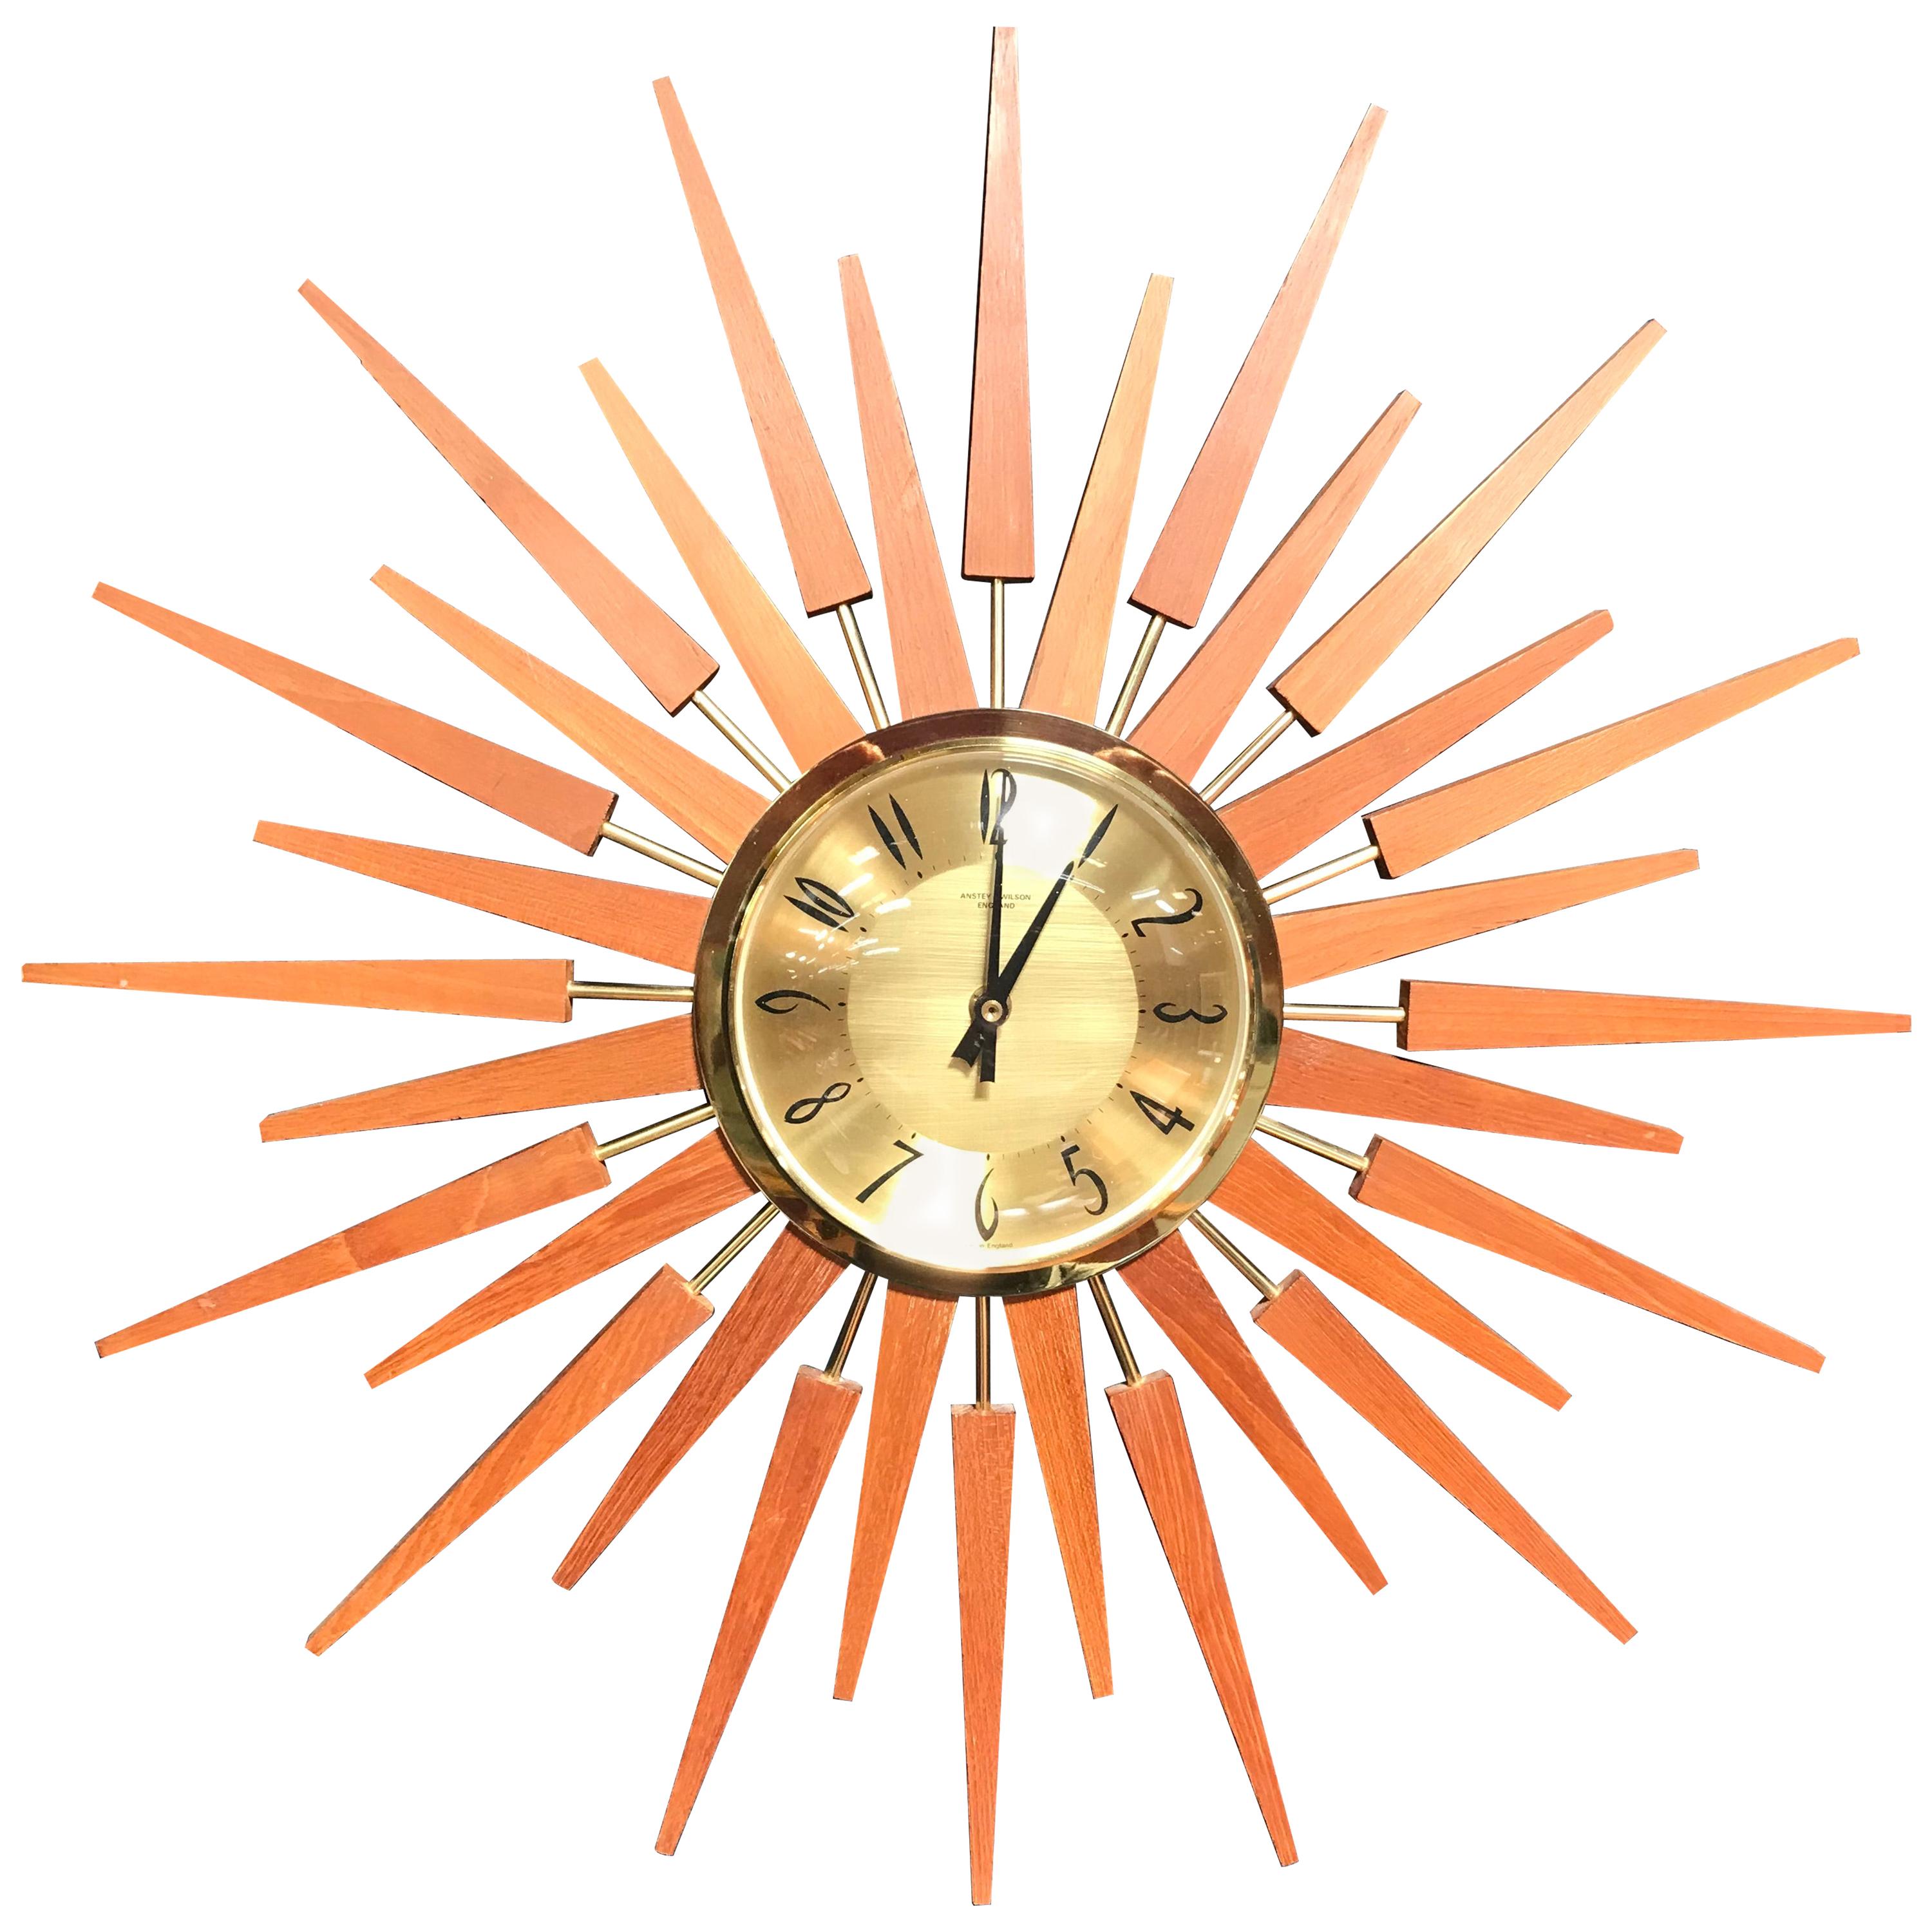 Midcentury Teak Sunburst or Starburst Clock by Anstey & Wilson For Sale